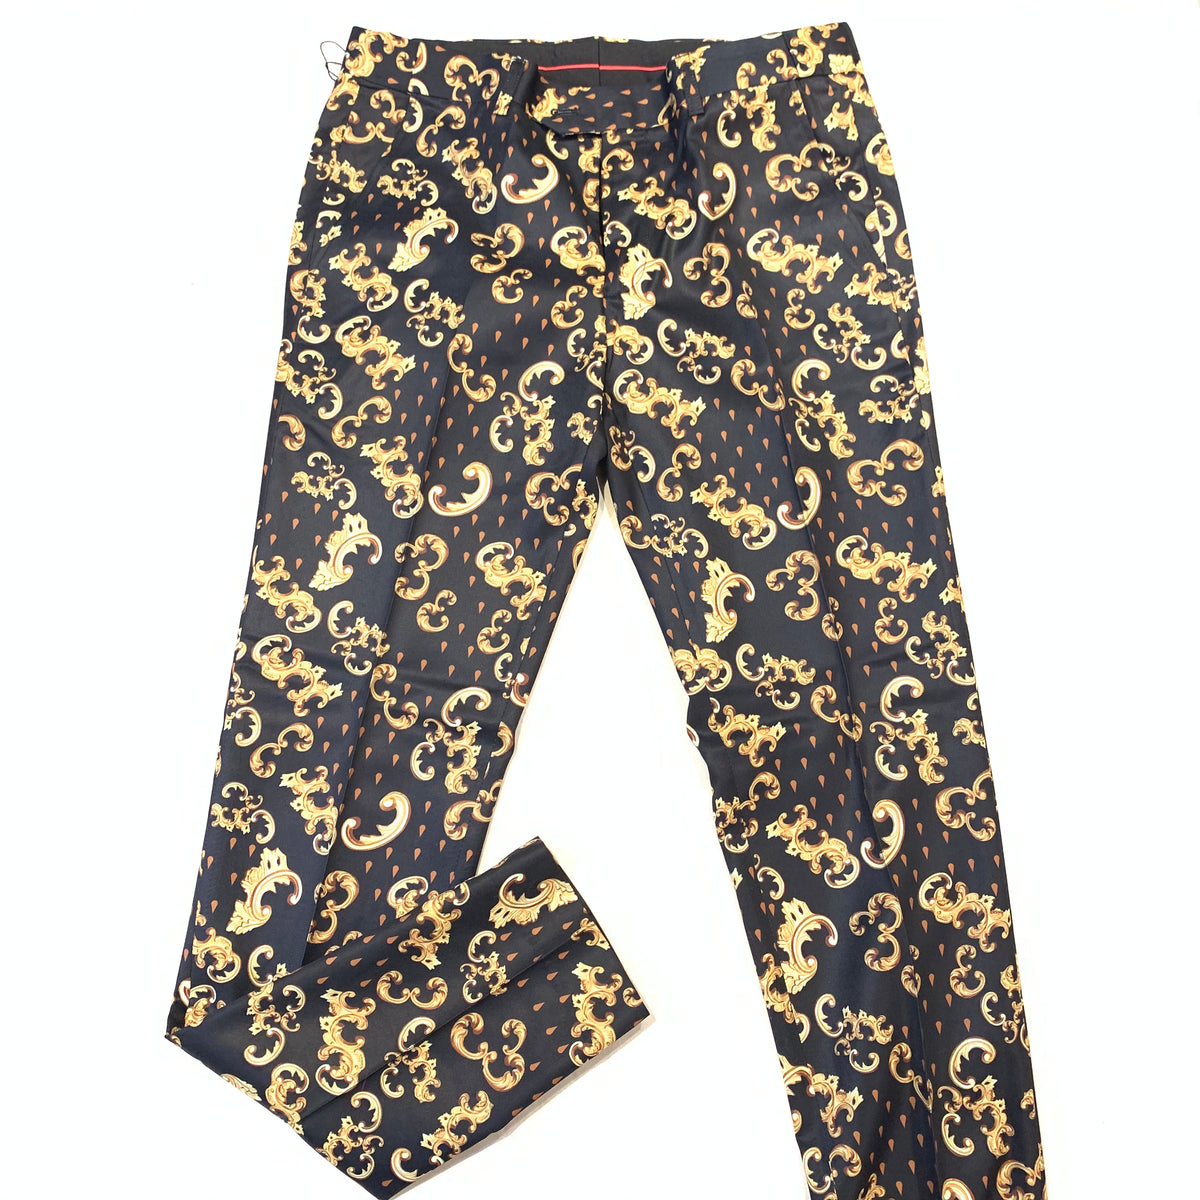 Barabas Black Gold Royal Print Dress Pants - Dudes Boutique